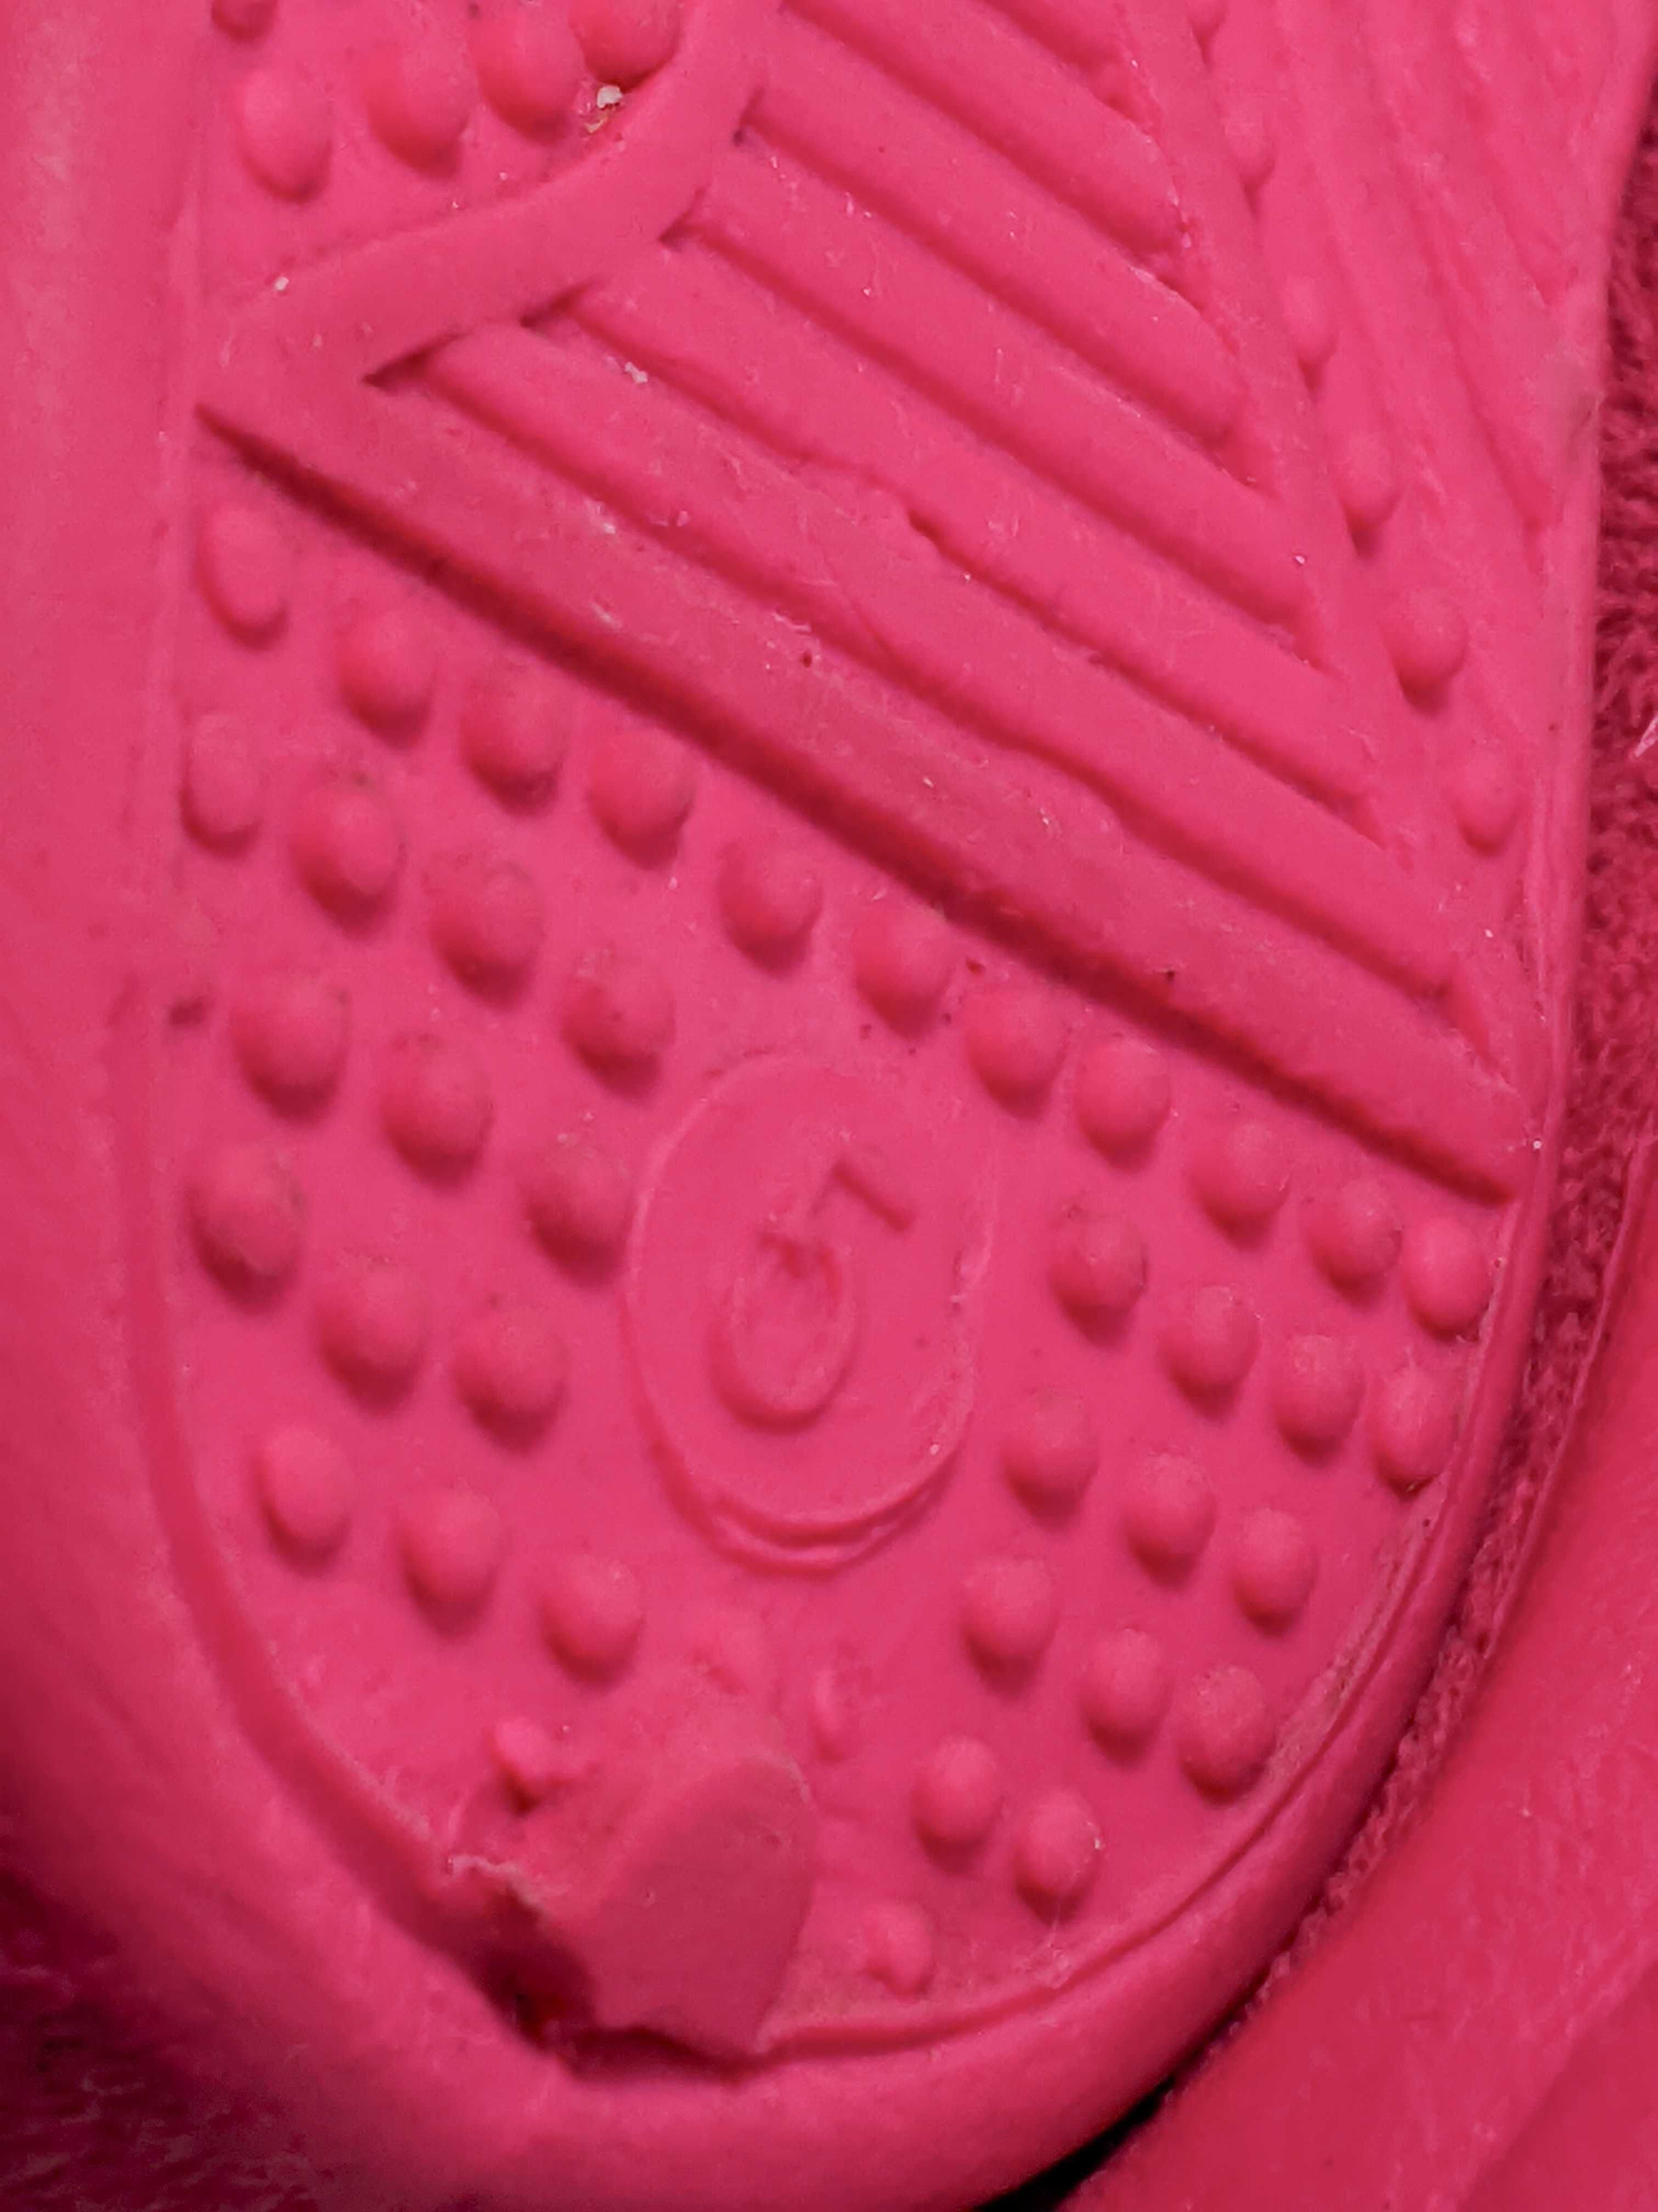 Сапоги сапожки уги  ботинки на меху детские розовые замша 19 раз